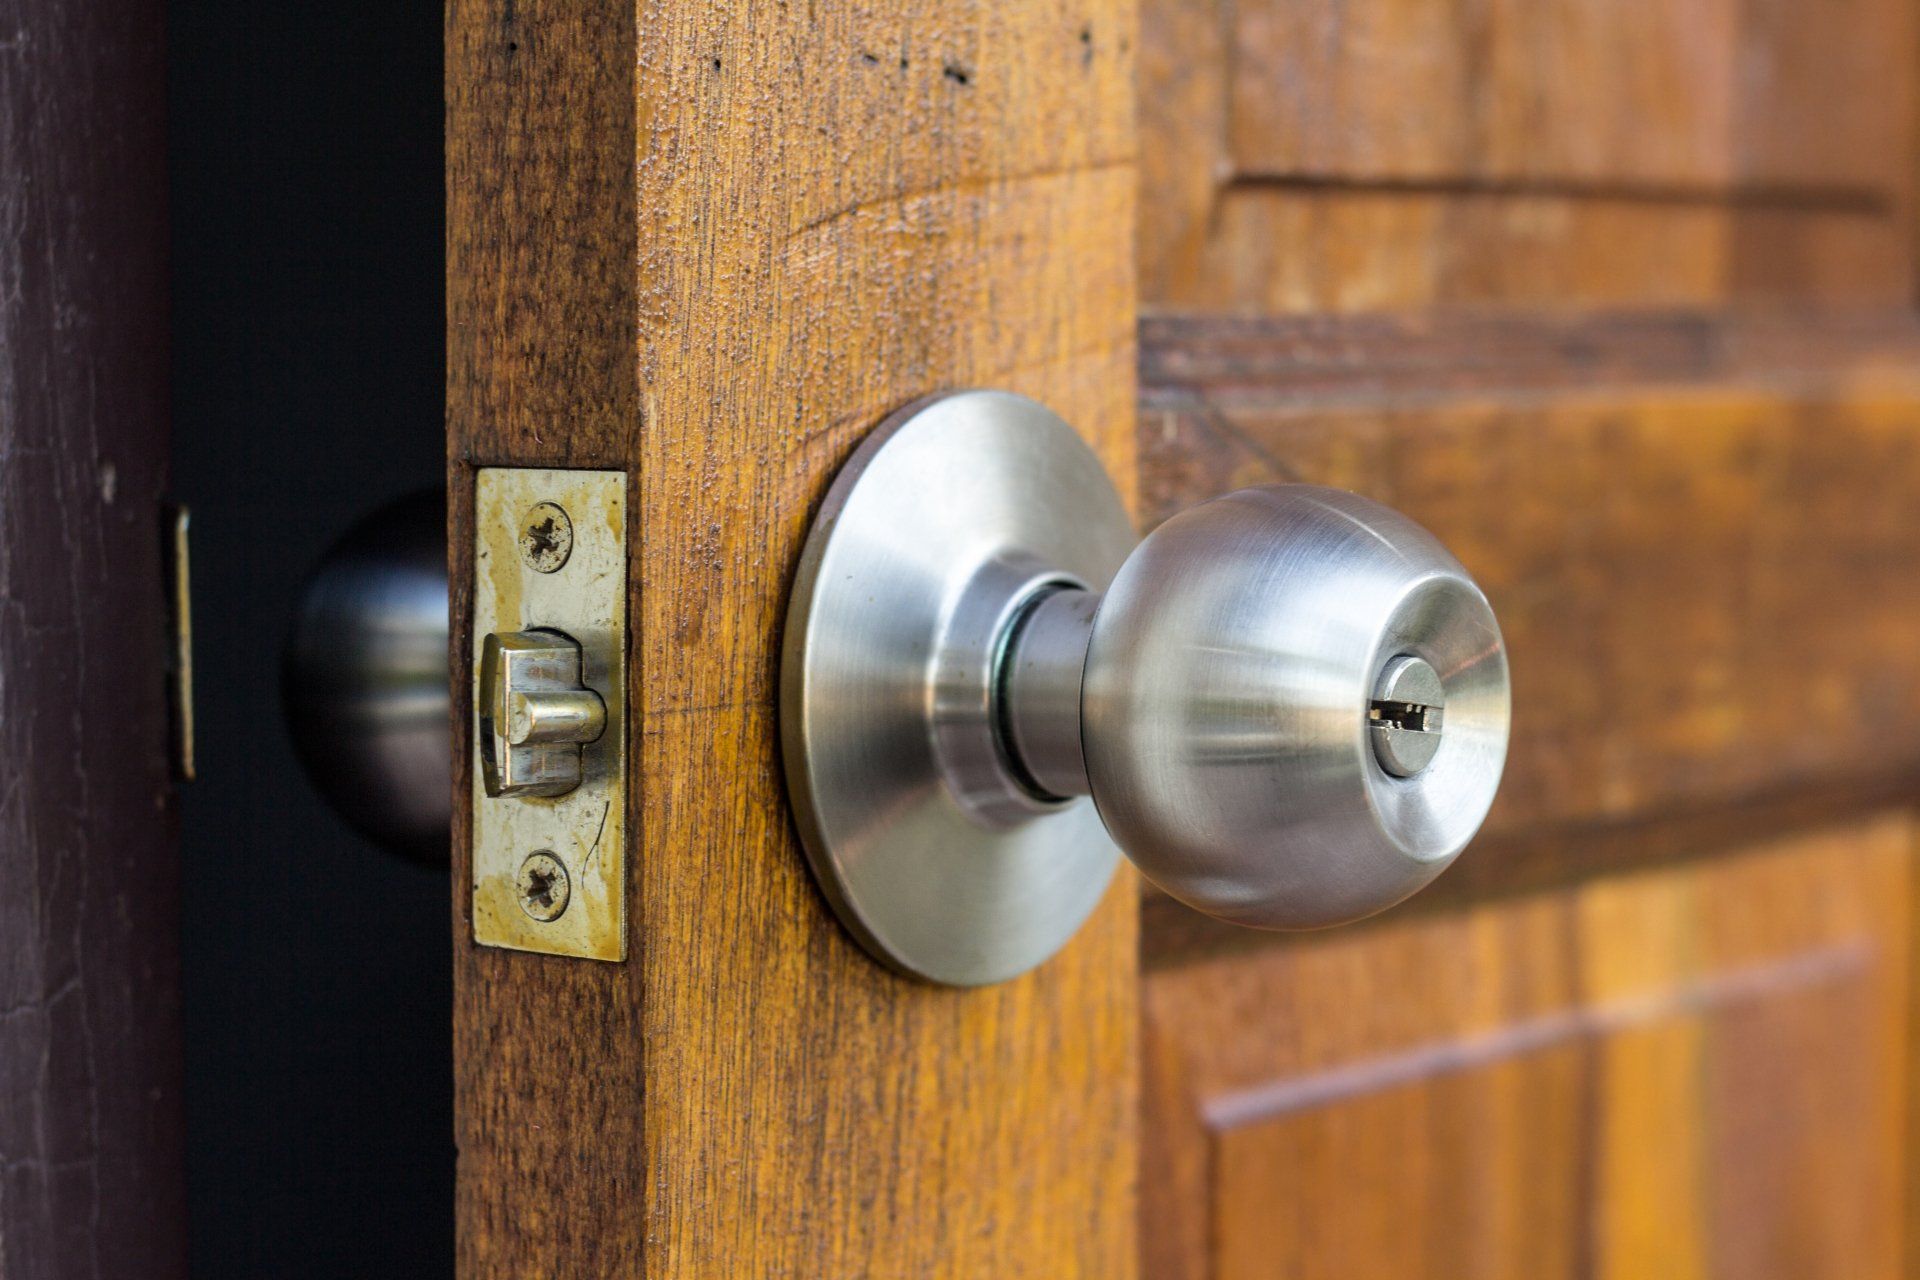 A close up of a door knob on a wooden door.